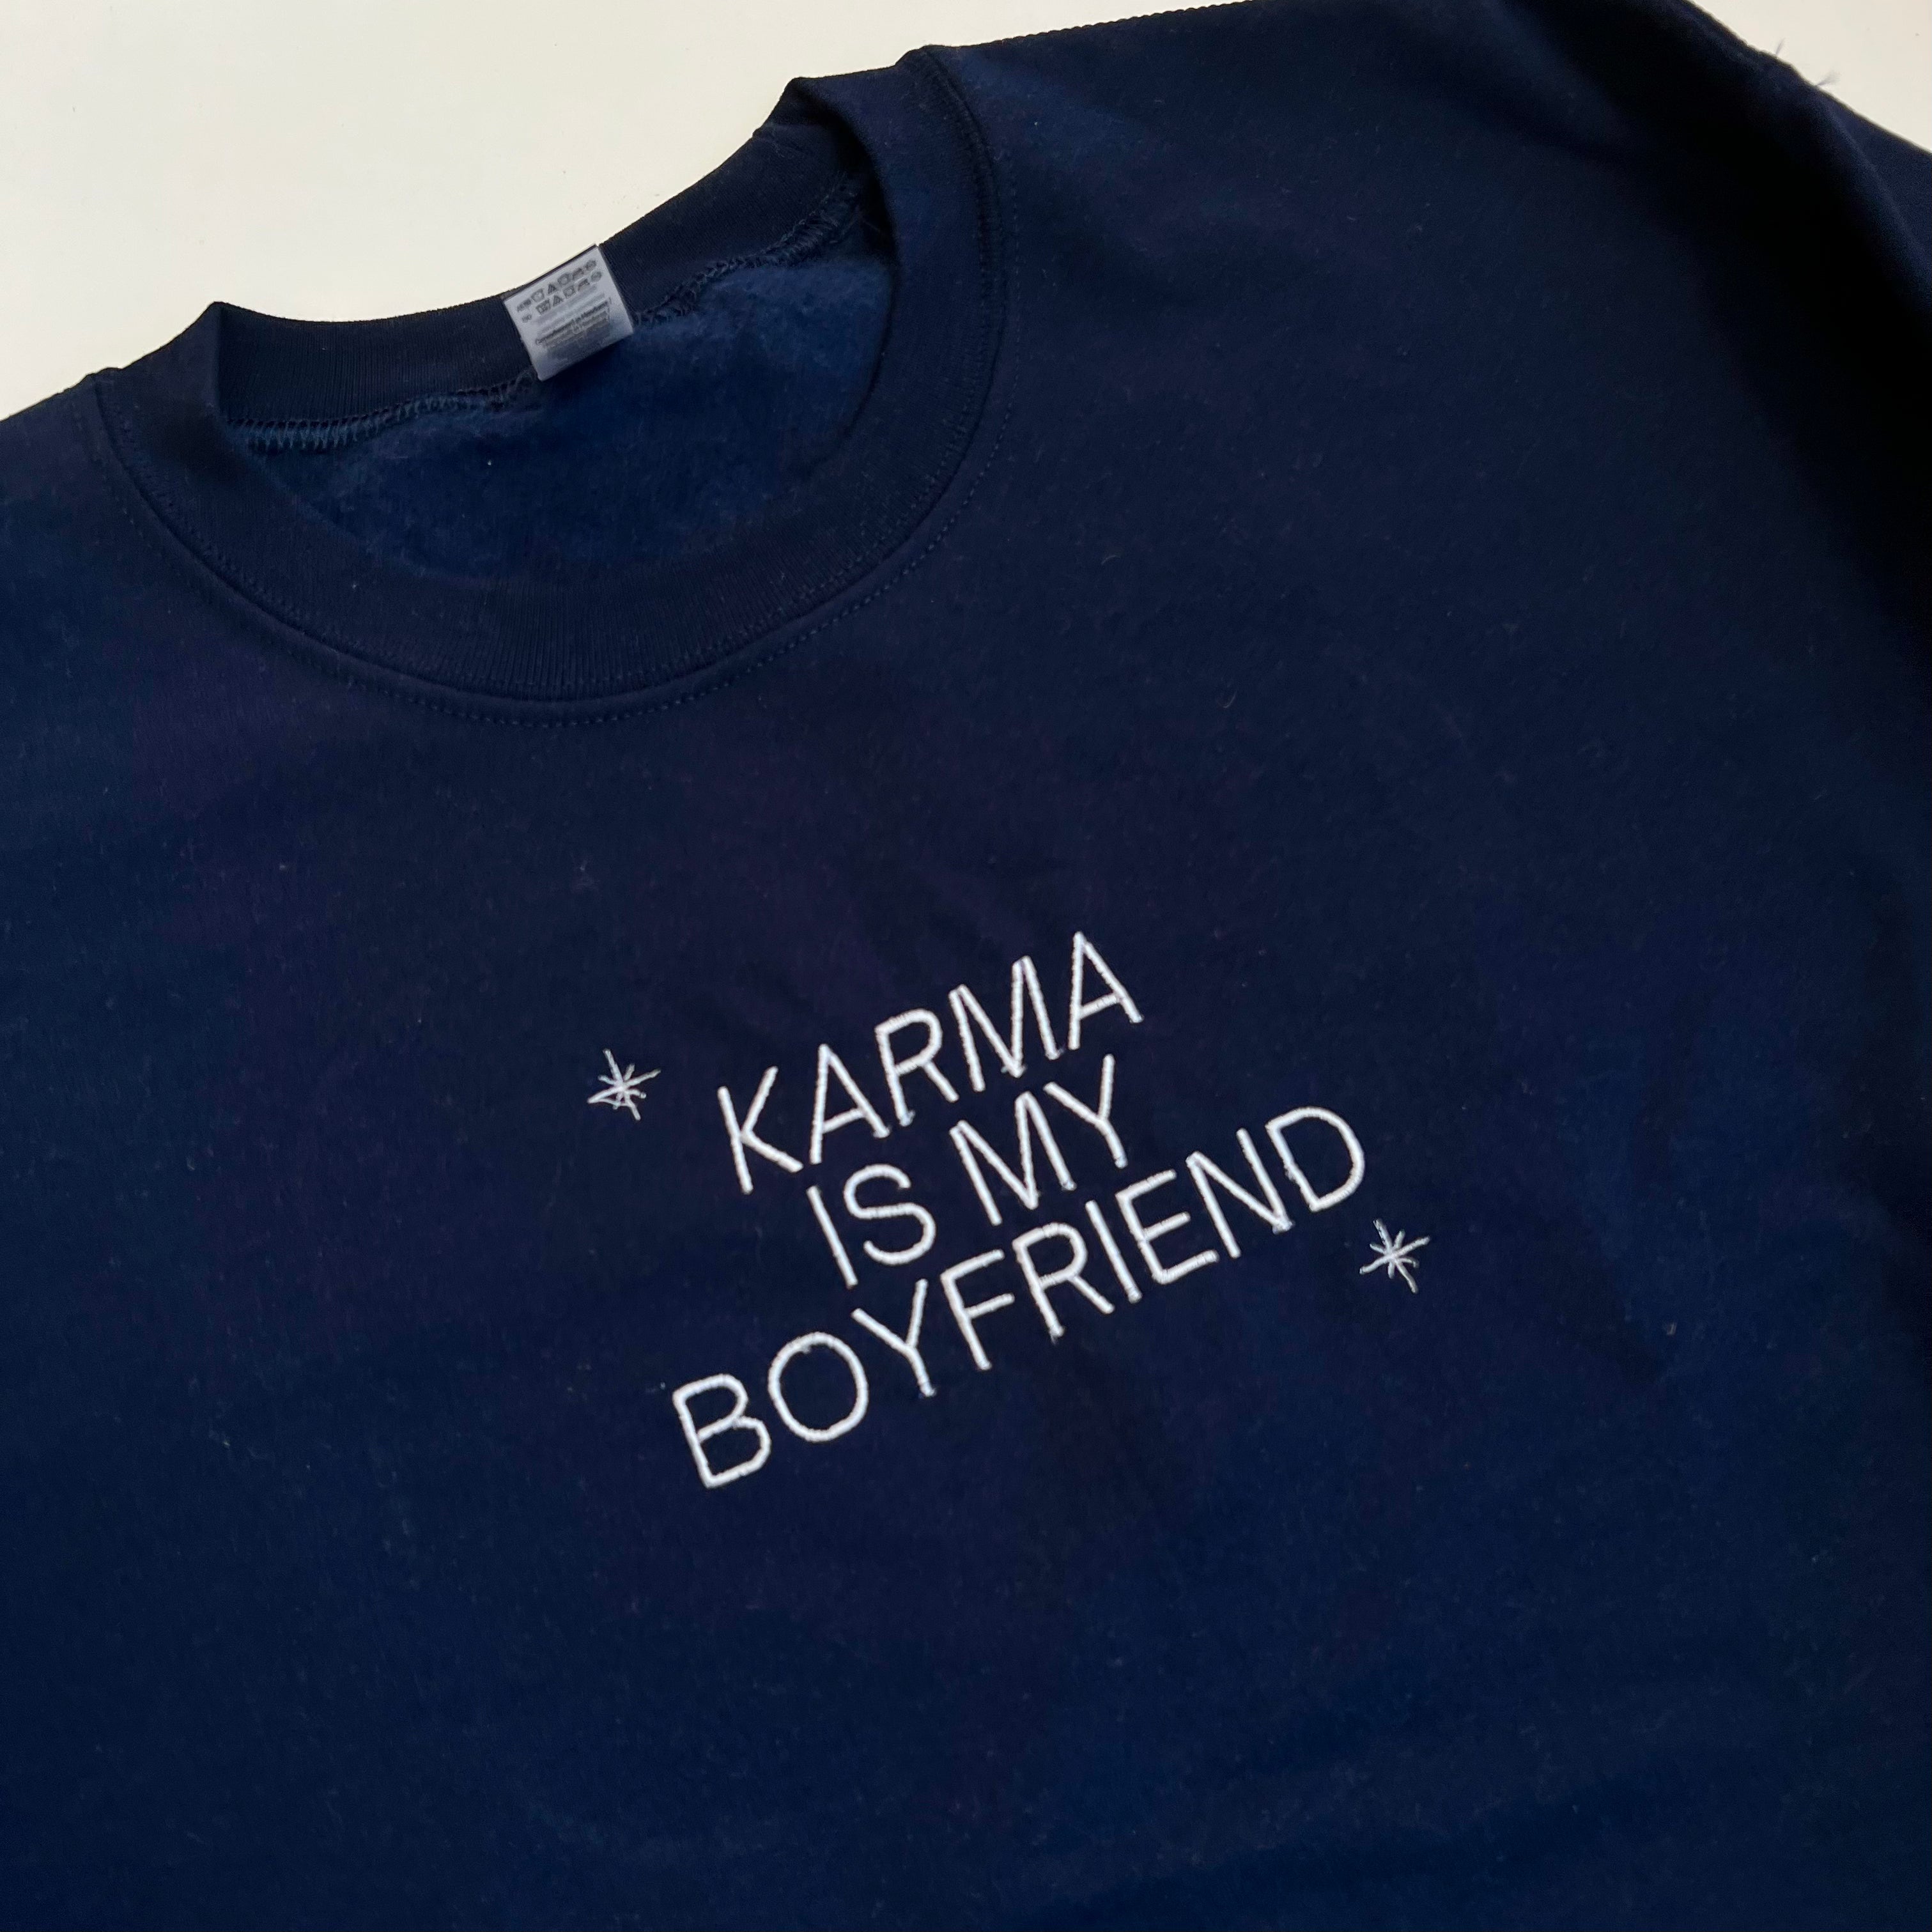 Karma is My Boyfriend